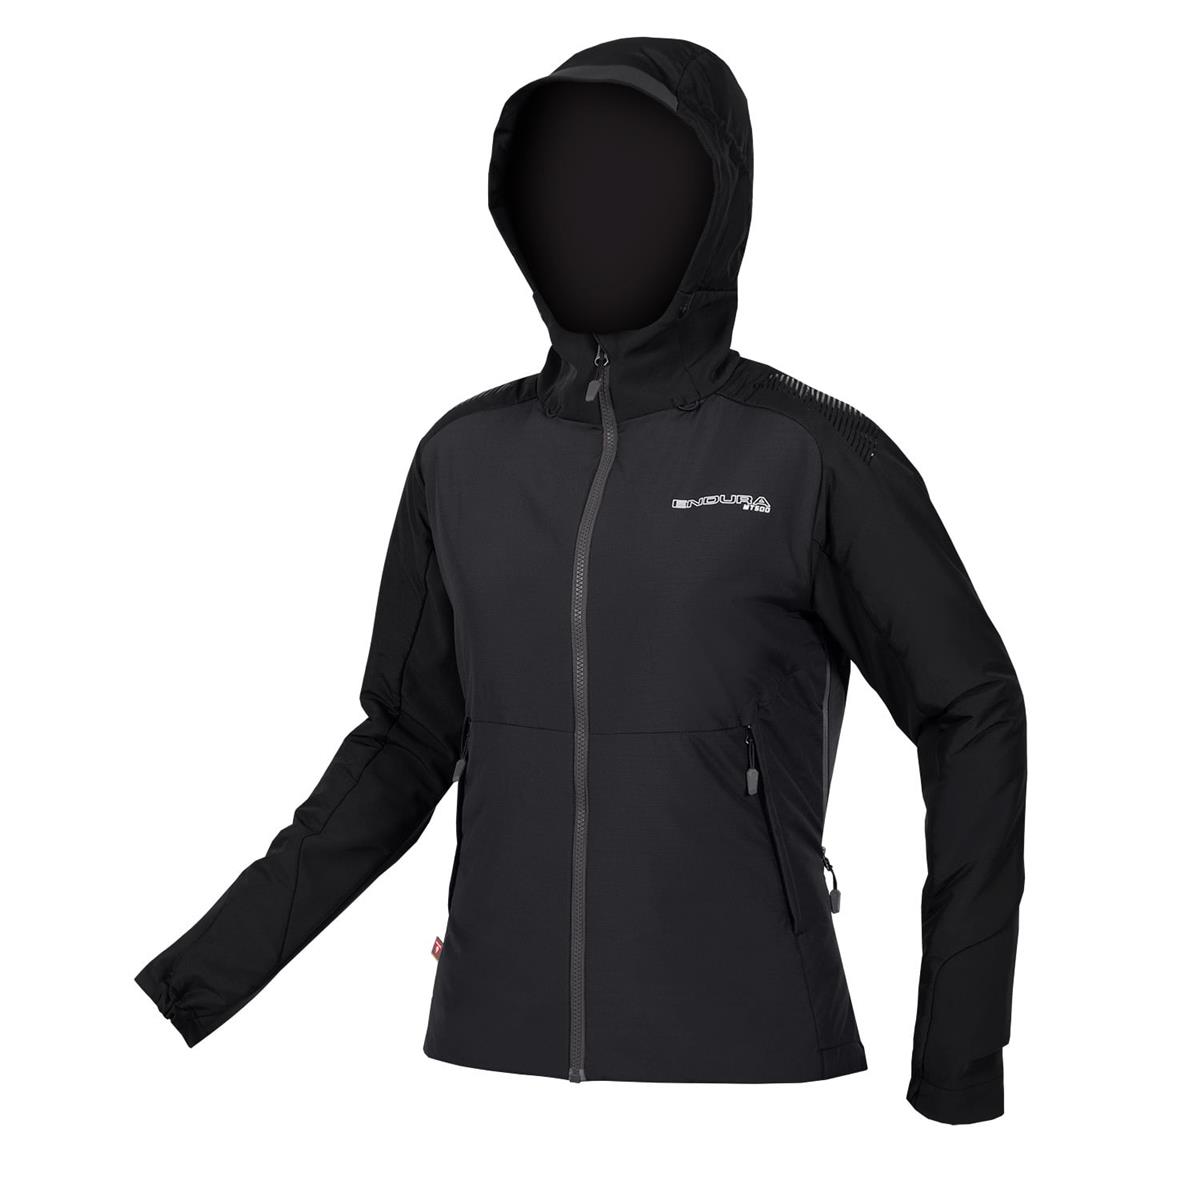 Women's winter jacket Women MT500 Freezing Point Jacket black size S